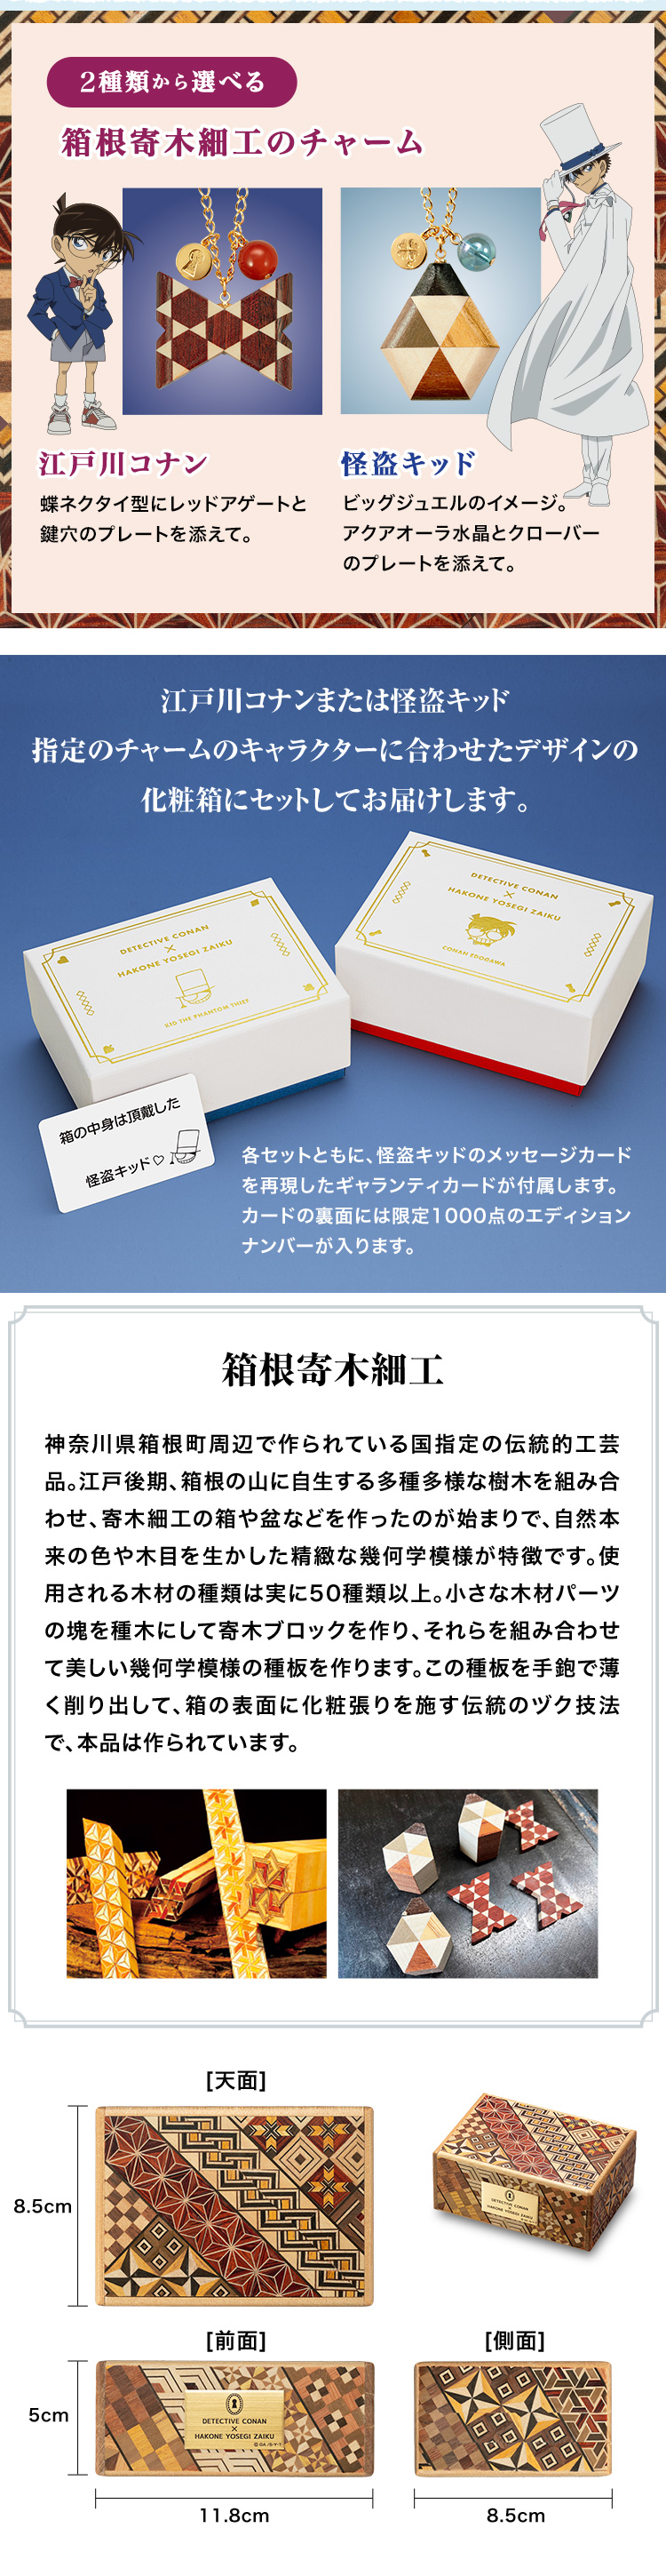 江戸川コナンまたは怪盗キッド、指定のチャームのキャラクターに合わせたデザインの化粧箱にセットしてお届けします。各セットともに、怪盗キッドのメッセージカードを再現したギャランティカードが付属します。カードの裏面には限定1000点のエディションナンバーが入ります。